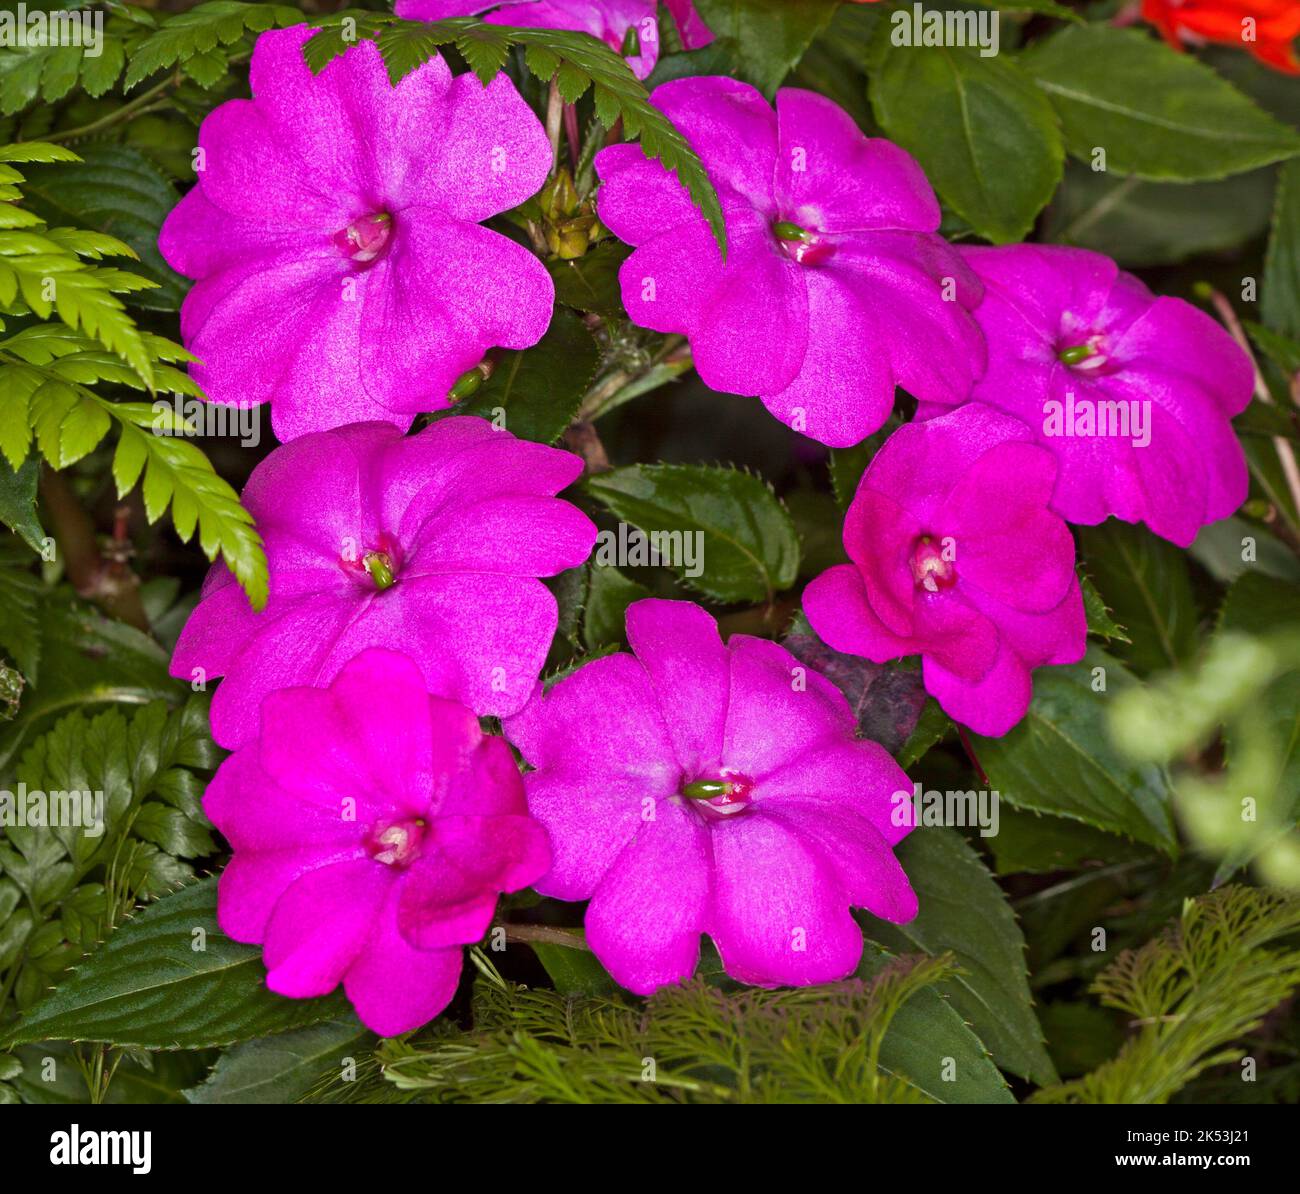 Groupe de grandes fleurs rose magenta vif / rouge d'Impatiens hawkerii hybride de Nouvelle Guinée 'Magnum' sur fond de feuilles vertes Banque D'Images